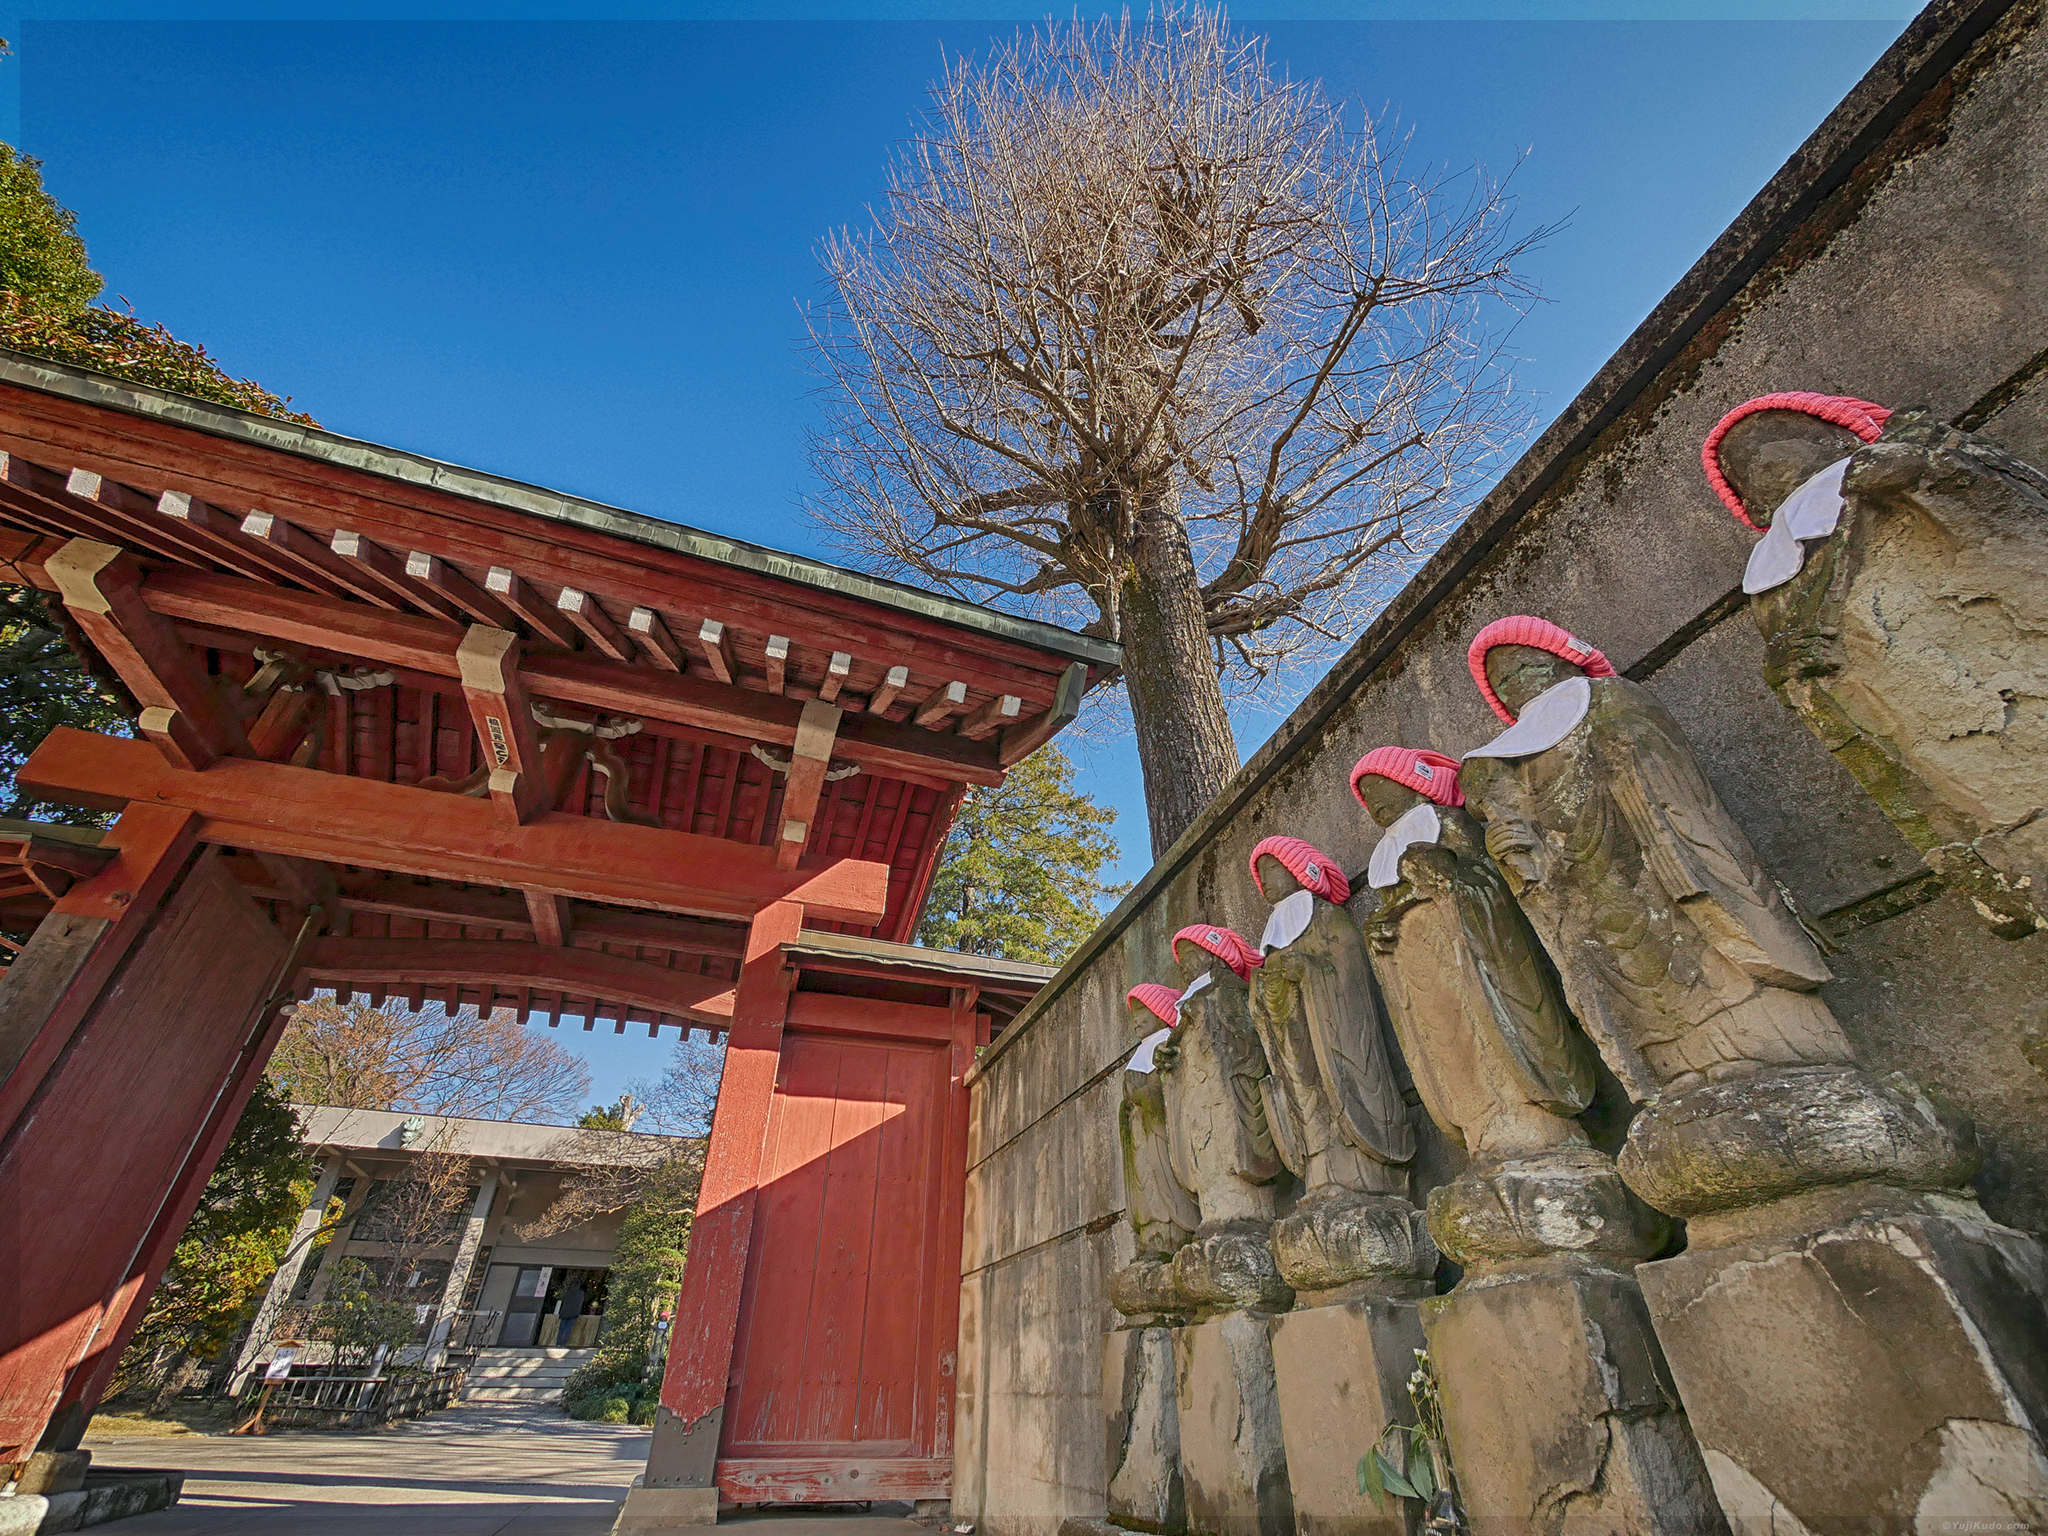 Anyouji Temple – Kichijoji